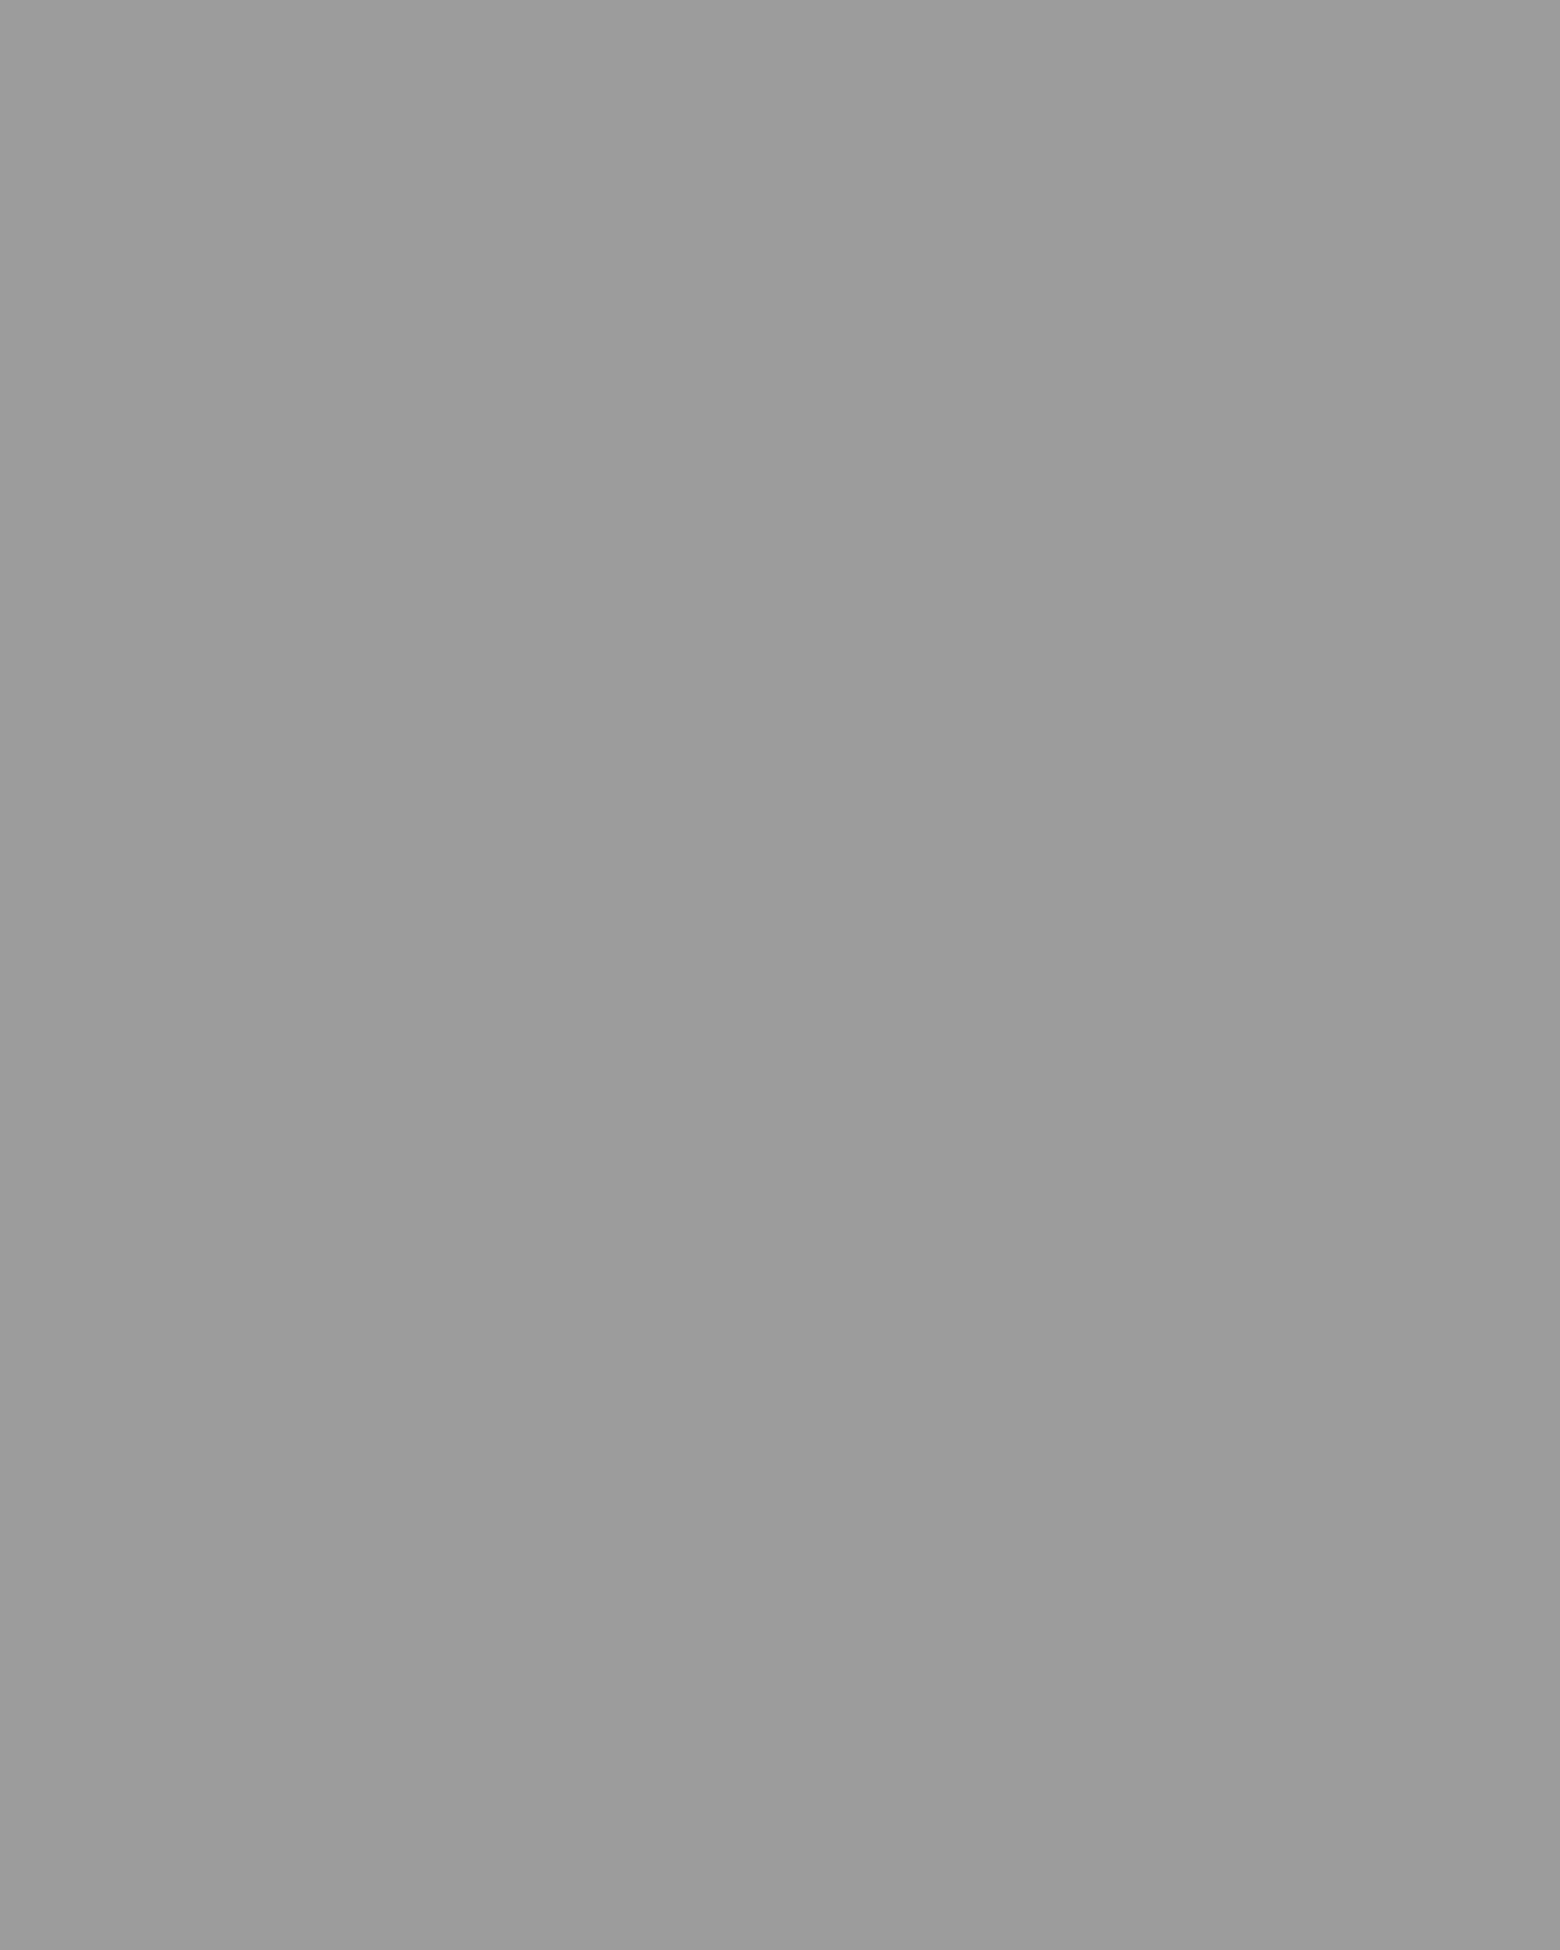 Деревянный павильон «Махорка» на 1-й Всероссийской сельскохозяйственной и кустарно-промышленной выставке. Москва. Архитектор Константин Мельников. 1923 год. Фотография: Фотохроника ТАСС